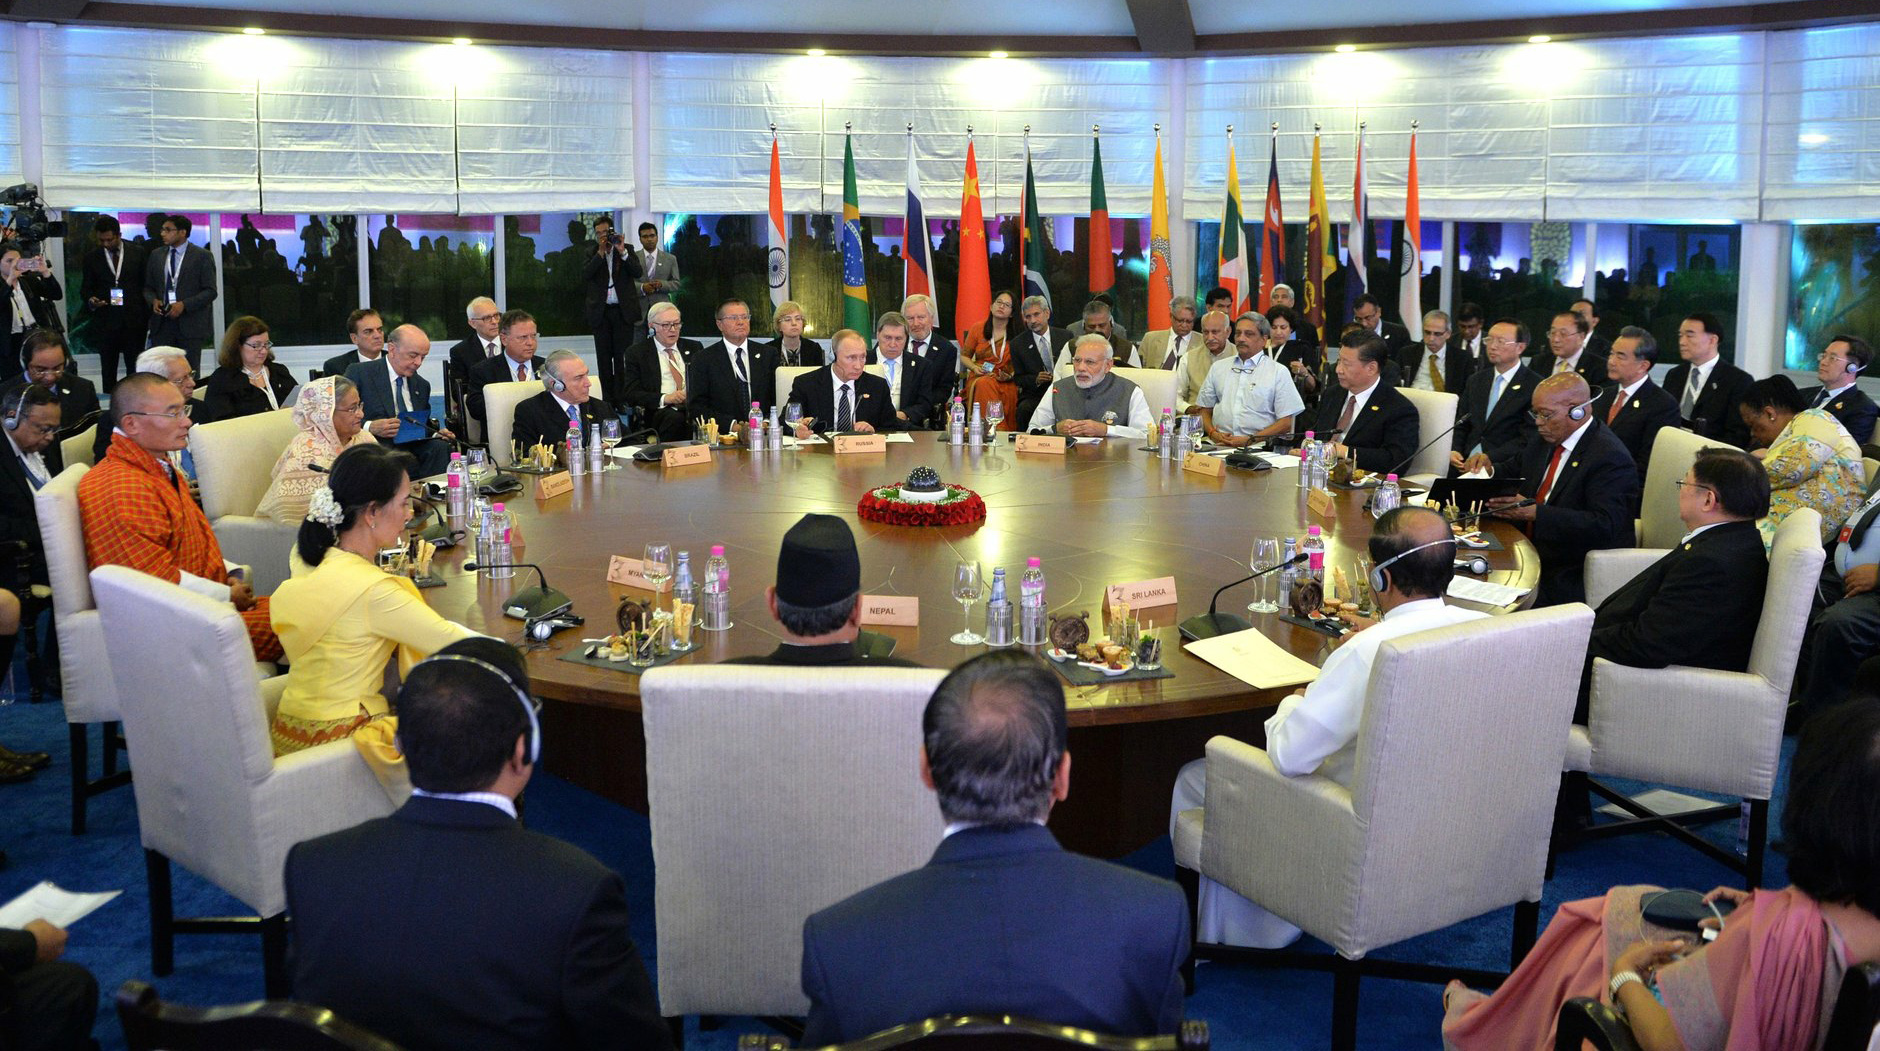 КНР пригласила пять стран из различных регионов мира на саммит undefined